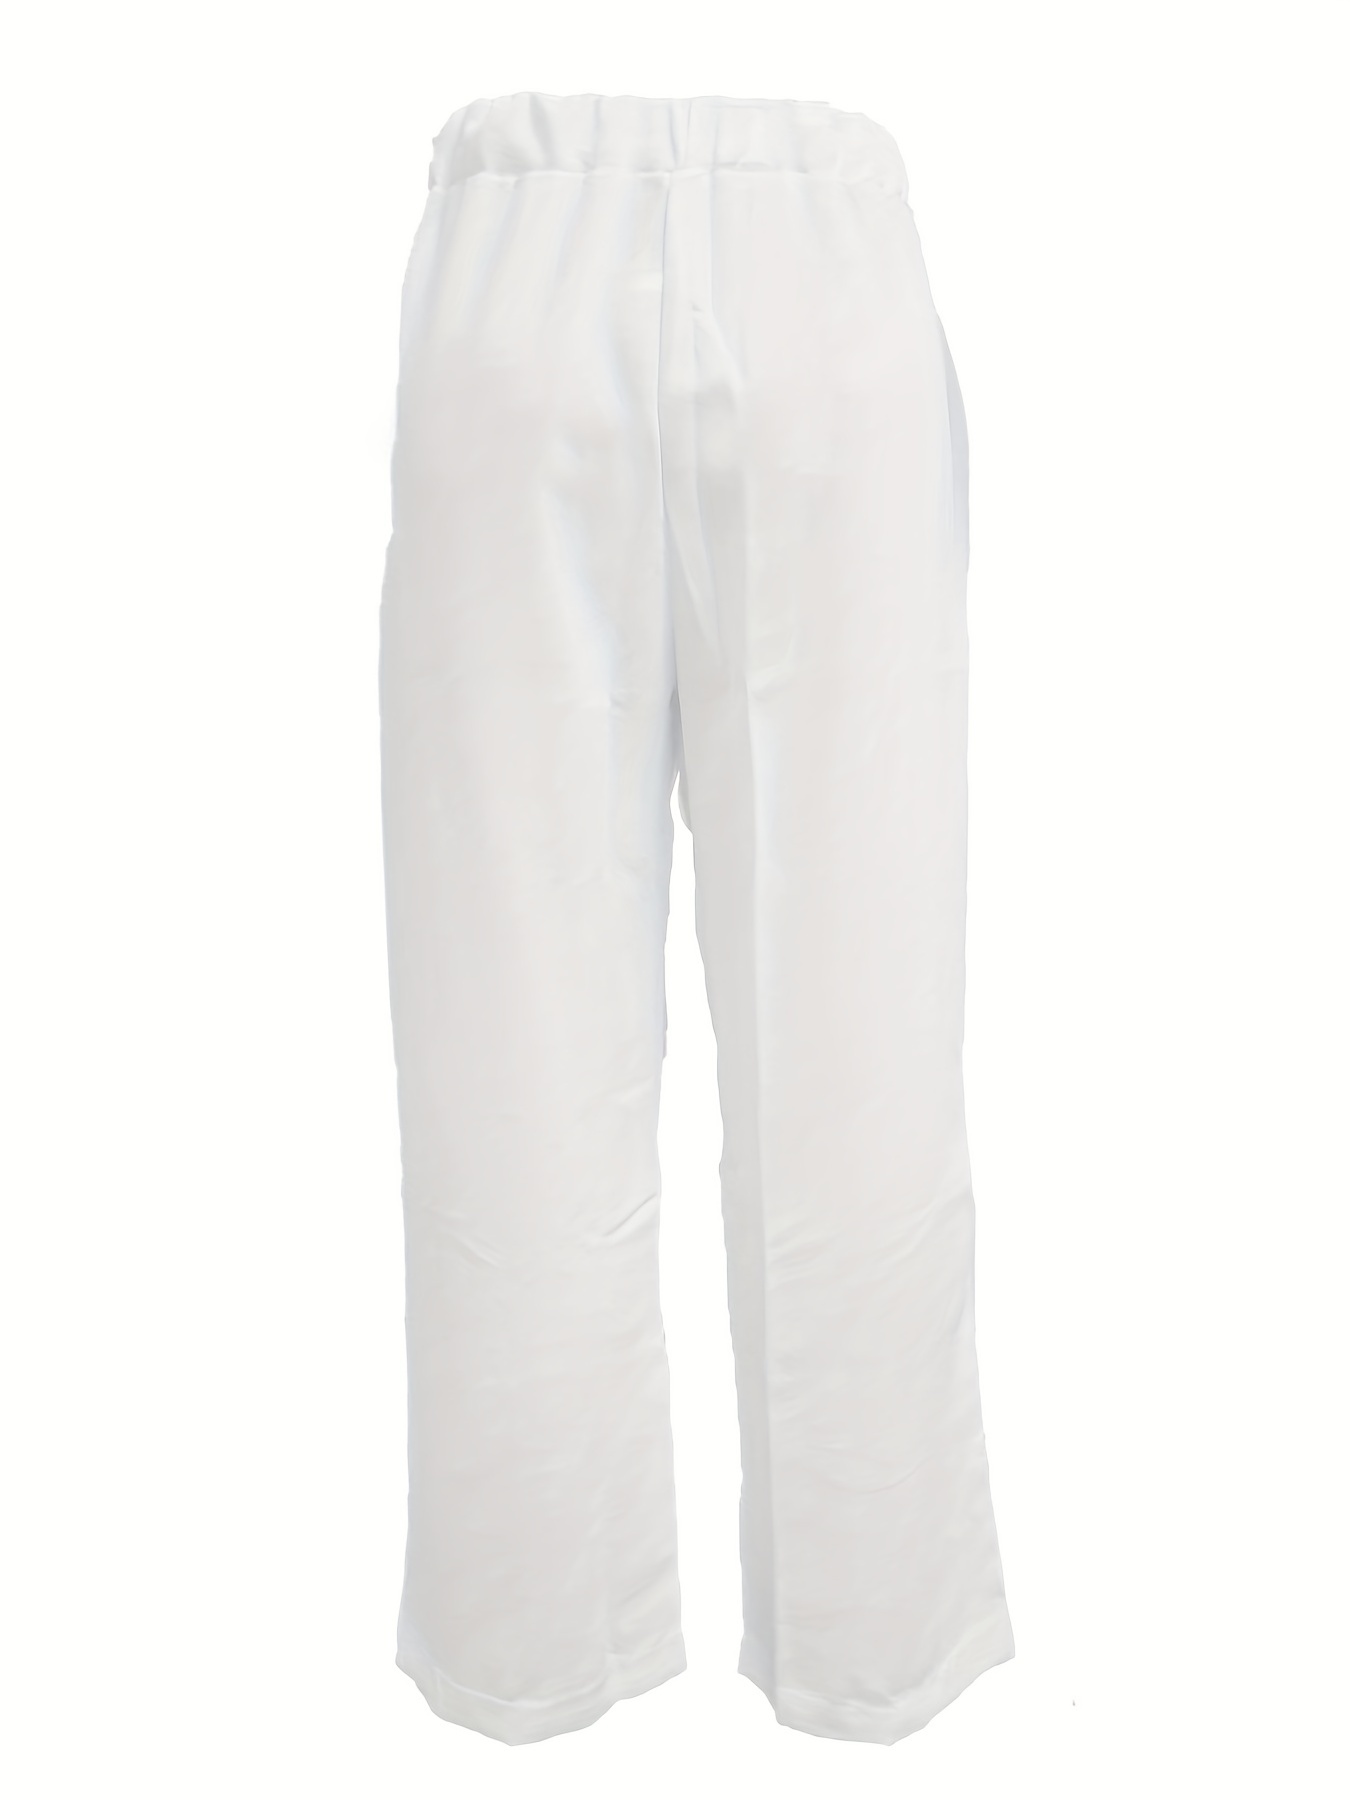 素晴らしい外見 Side Pocket Sweat Pants/niche. LサイズBLACK - パンツ